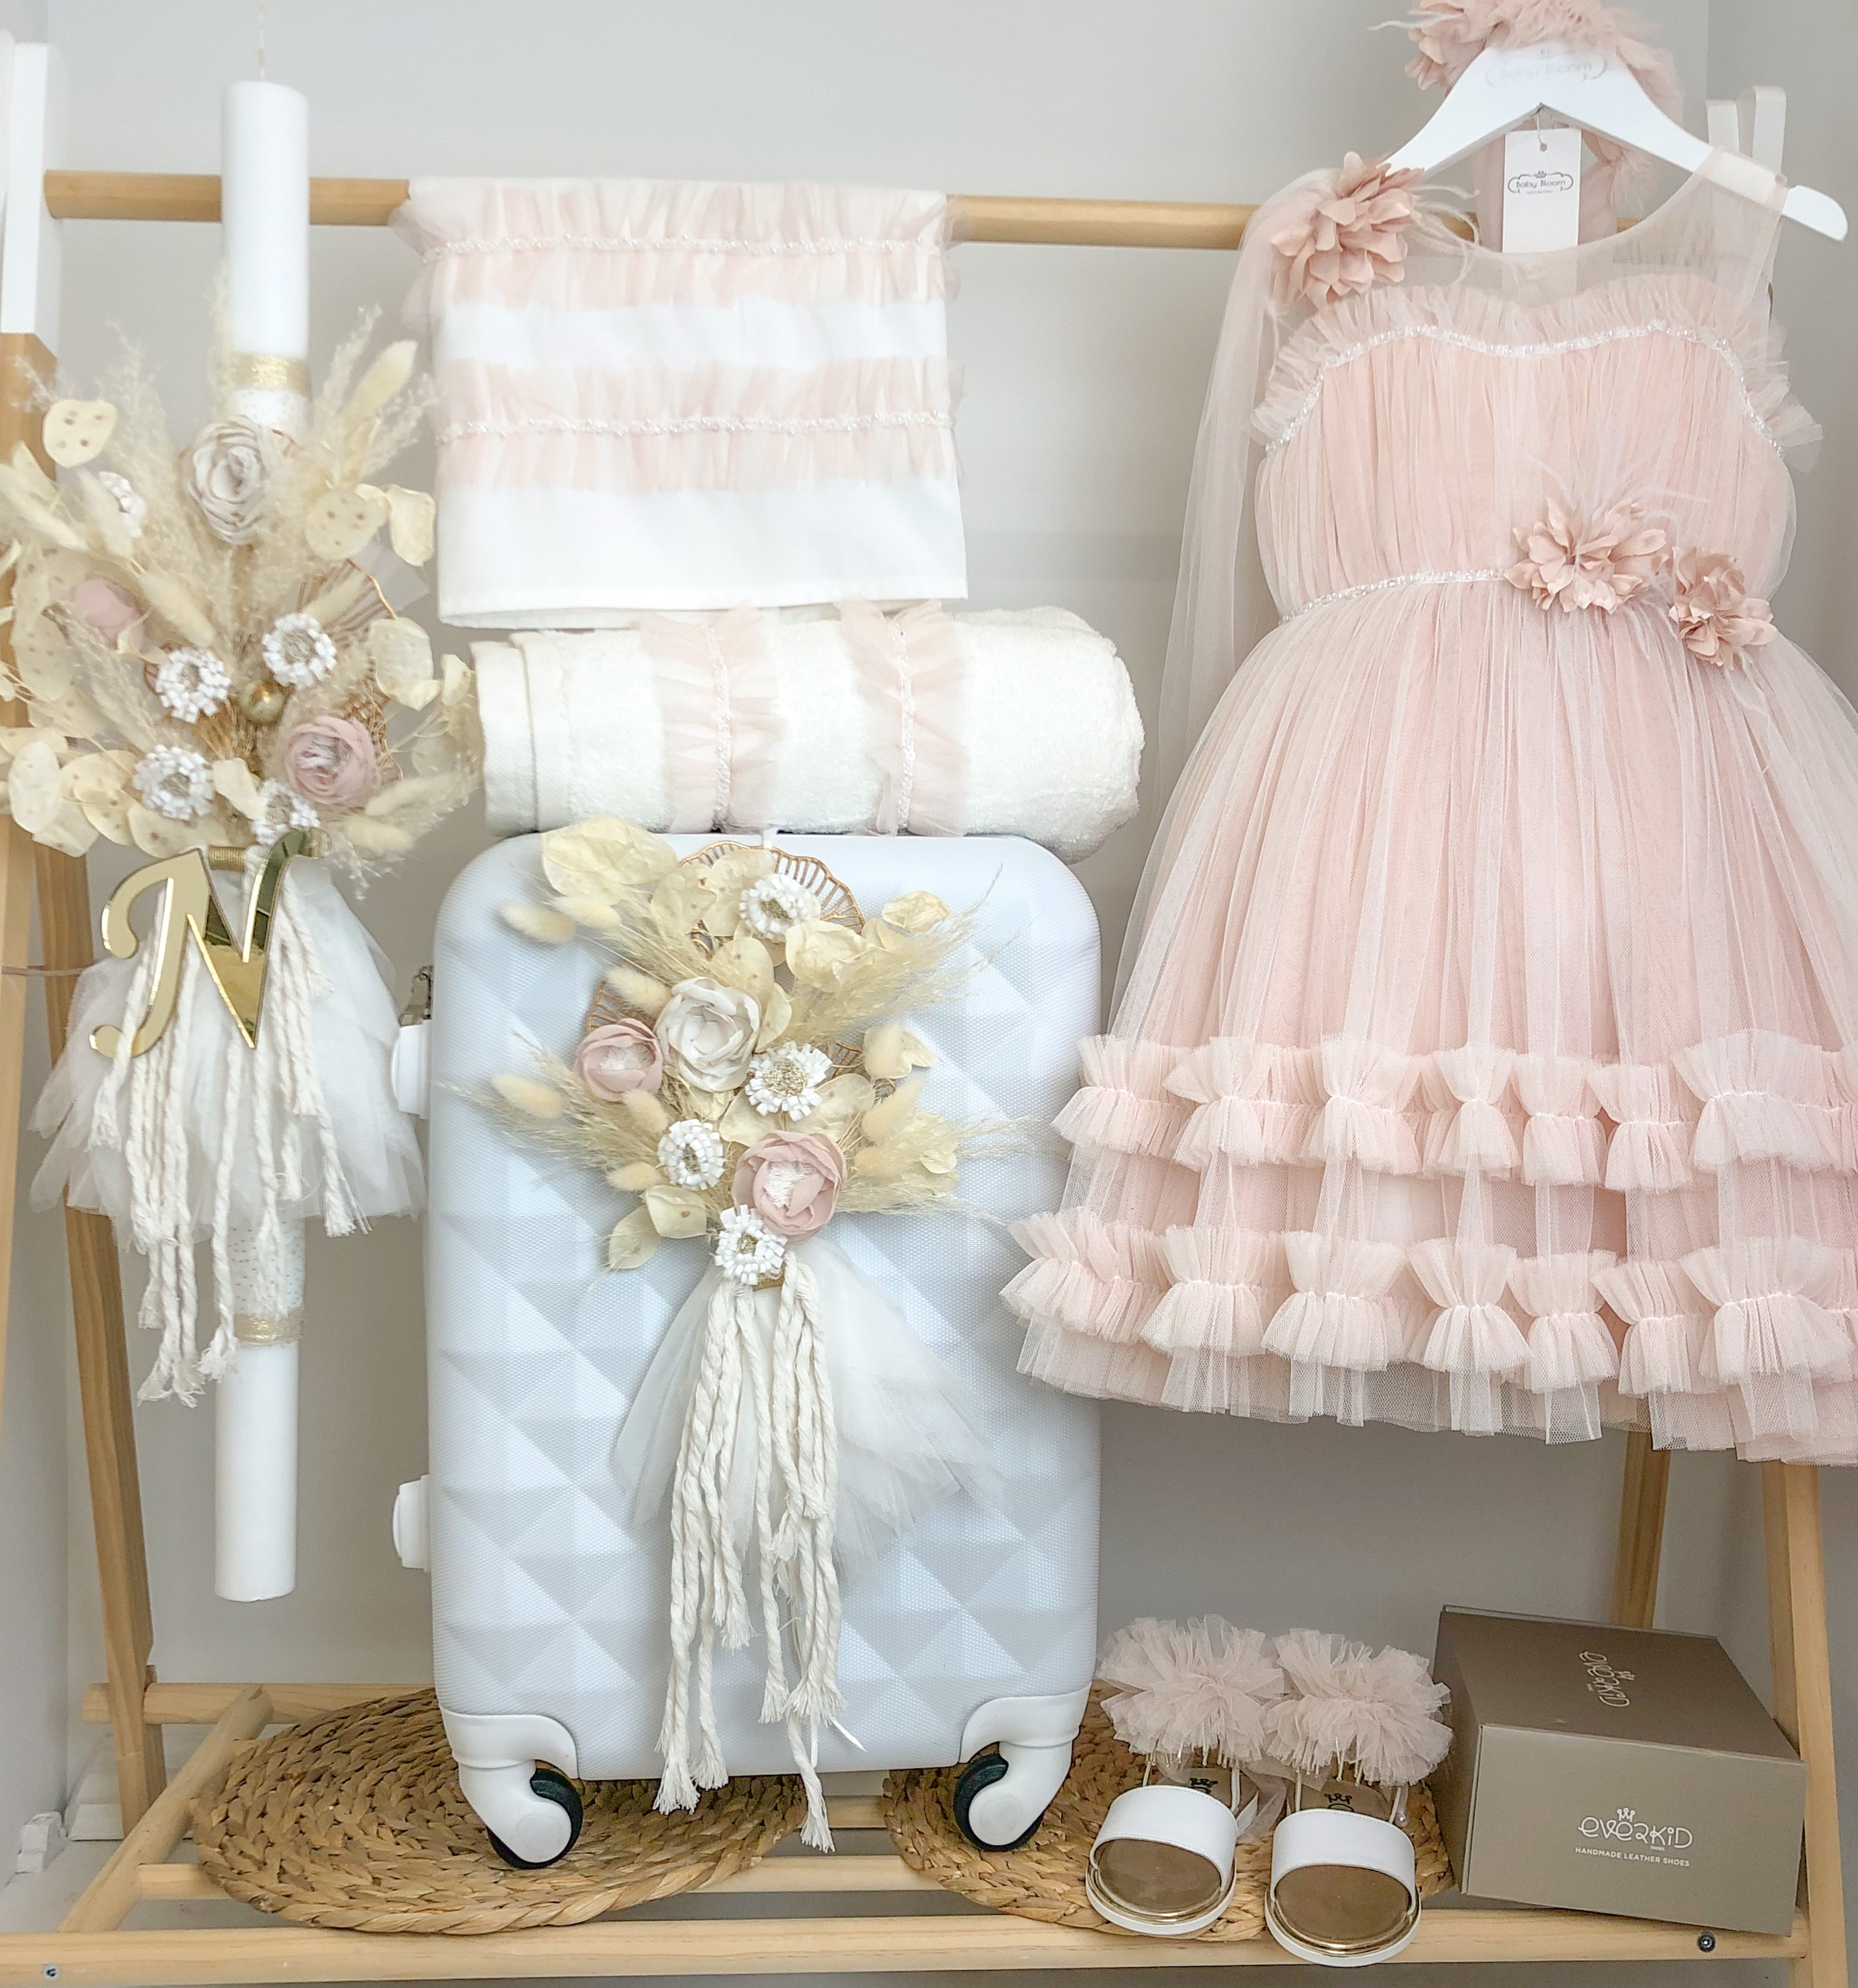 βαπτιστικό σετ για κορίτσι boho λουλούδια αποξηραμένα pampas με βαλίτσα λευκό πούδρα τούλινο φόρεμα ροζ σάπιο μήλο μονόγραμμα χρυσό plexiglass : 1